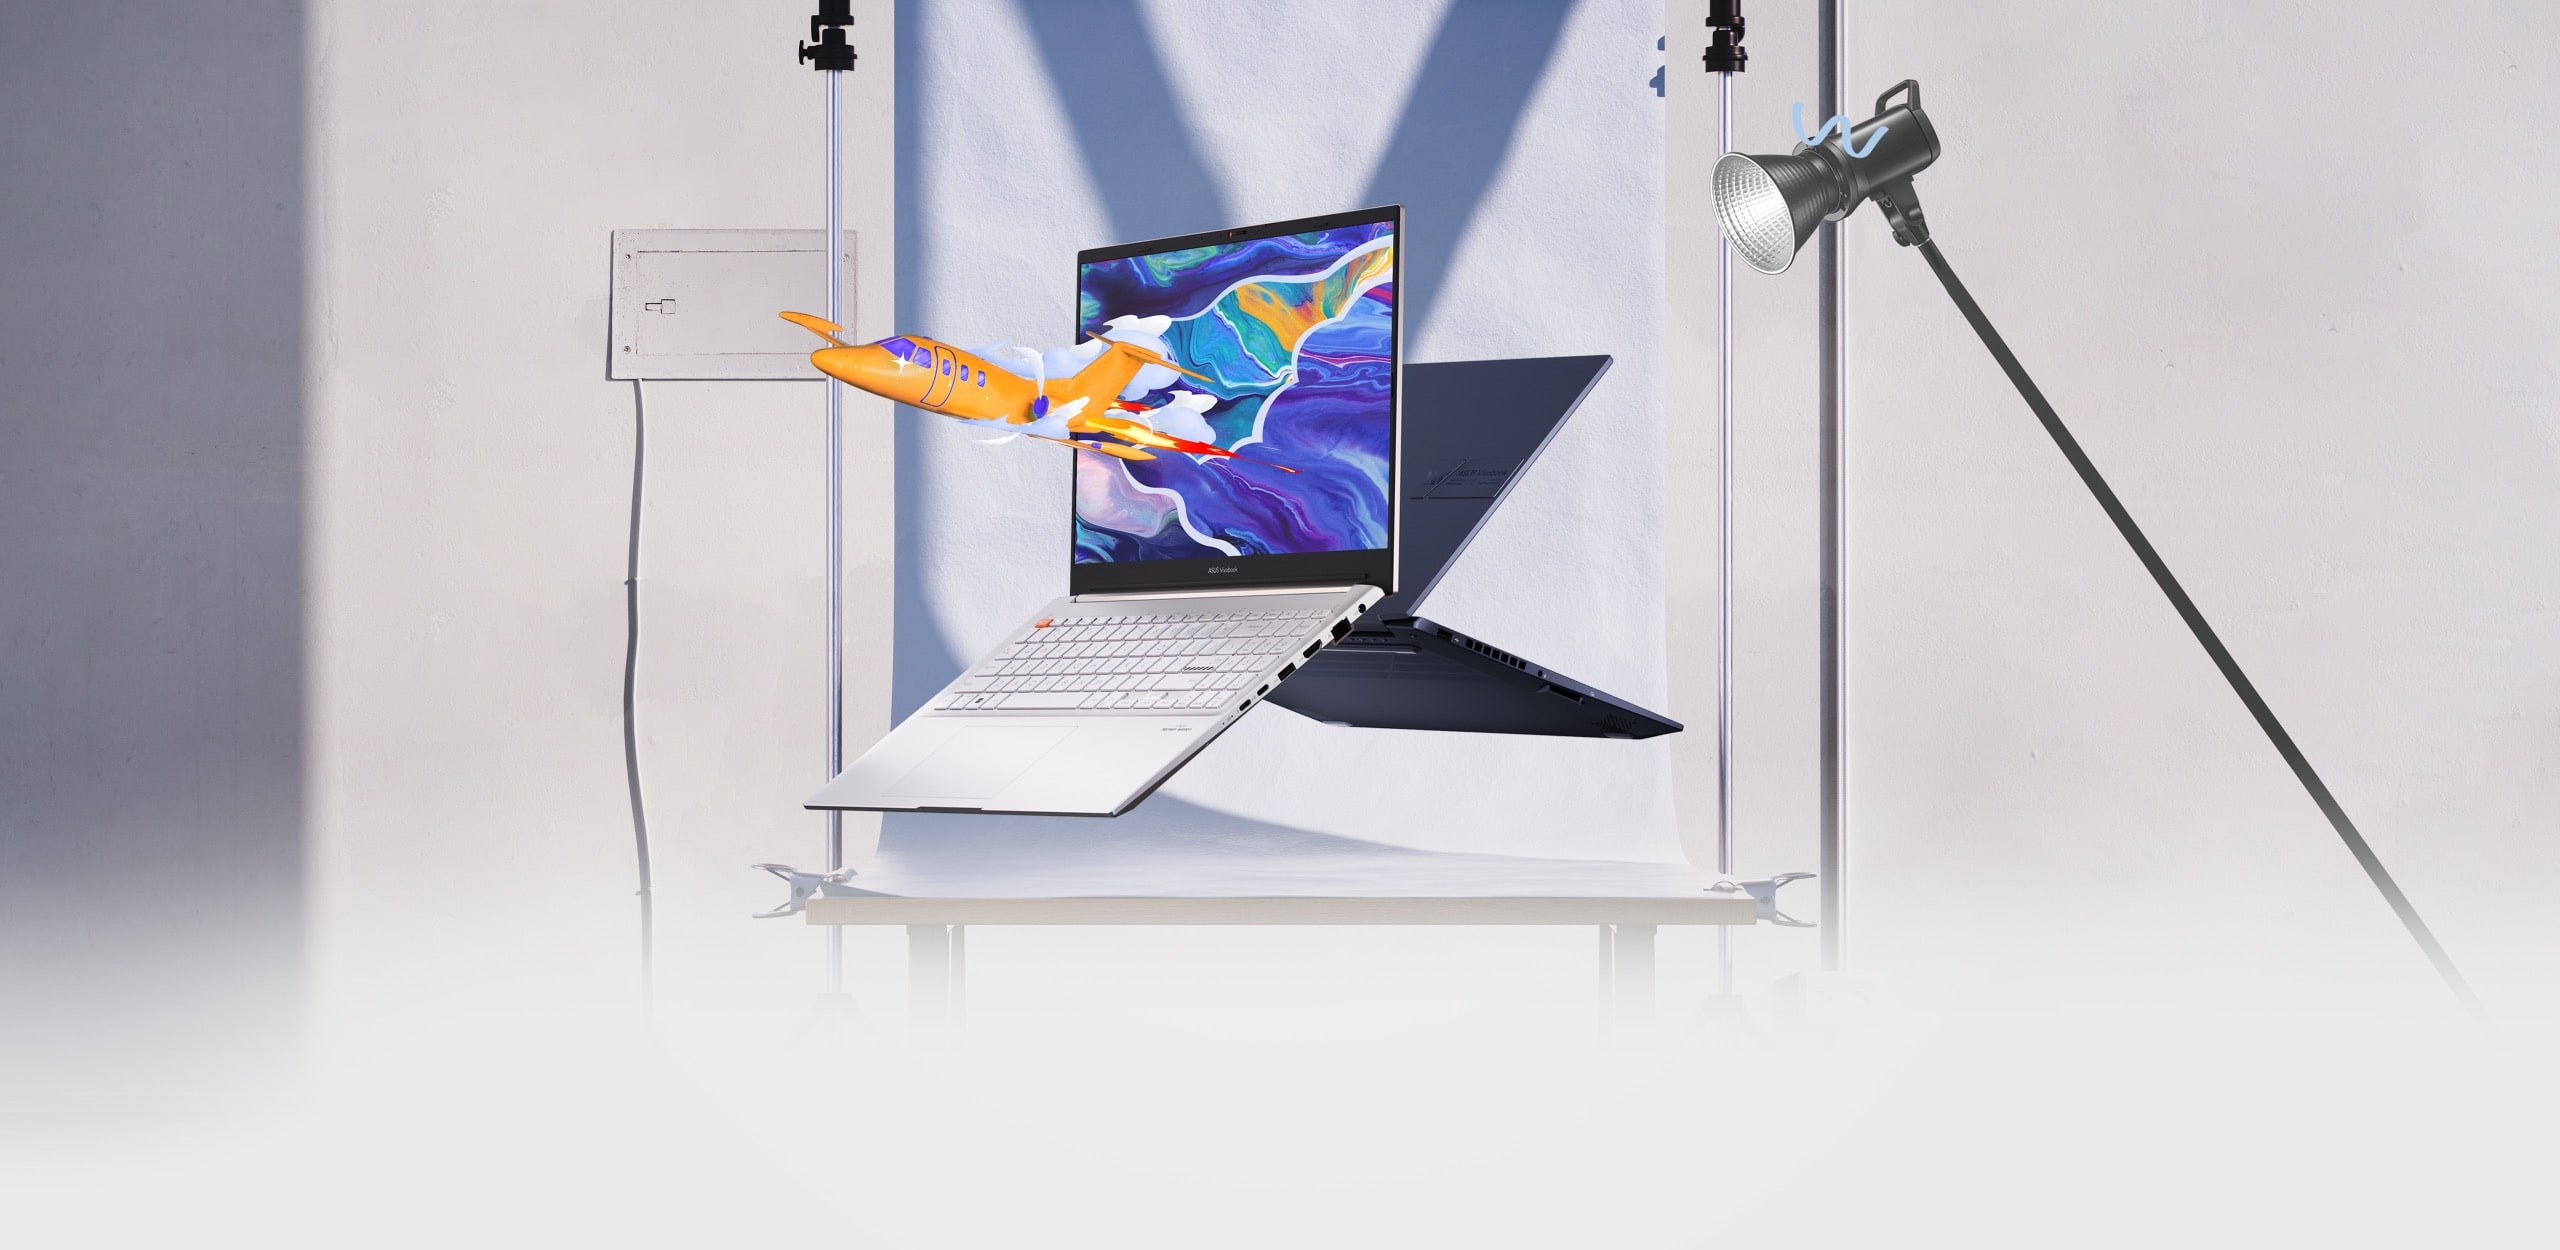 Dva notebooky Vivobook Pro 15 OLED při pohledu zepředu a zezadu, přičemž na jednom z nich je zobrazeno letadlo vyskakující z barevné grafiky na obrazovce.